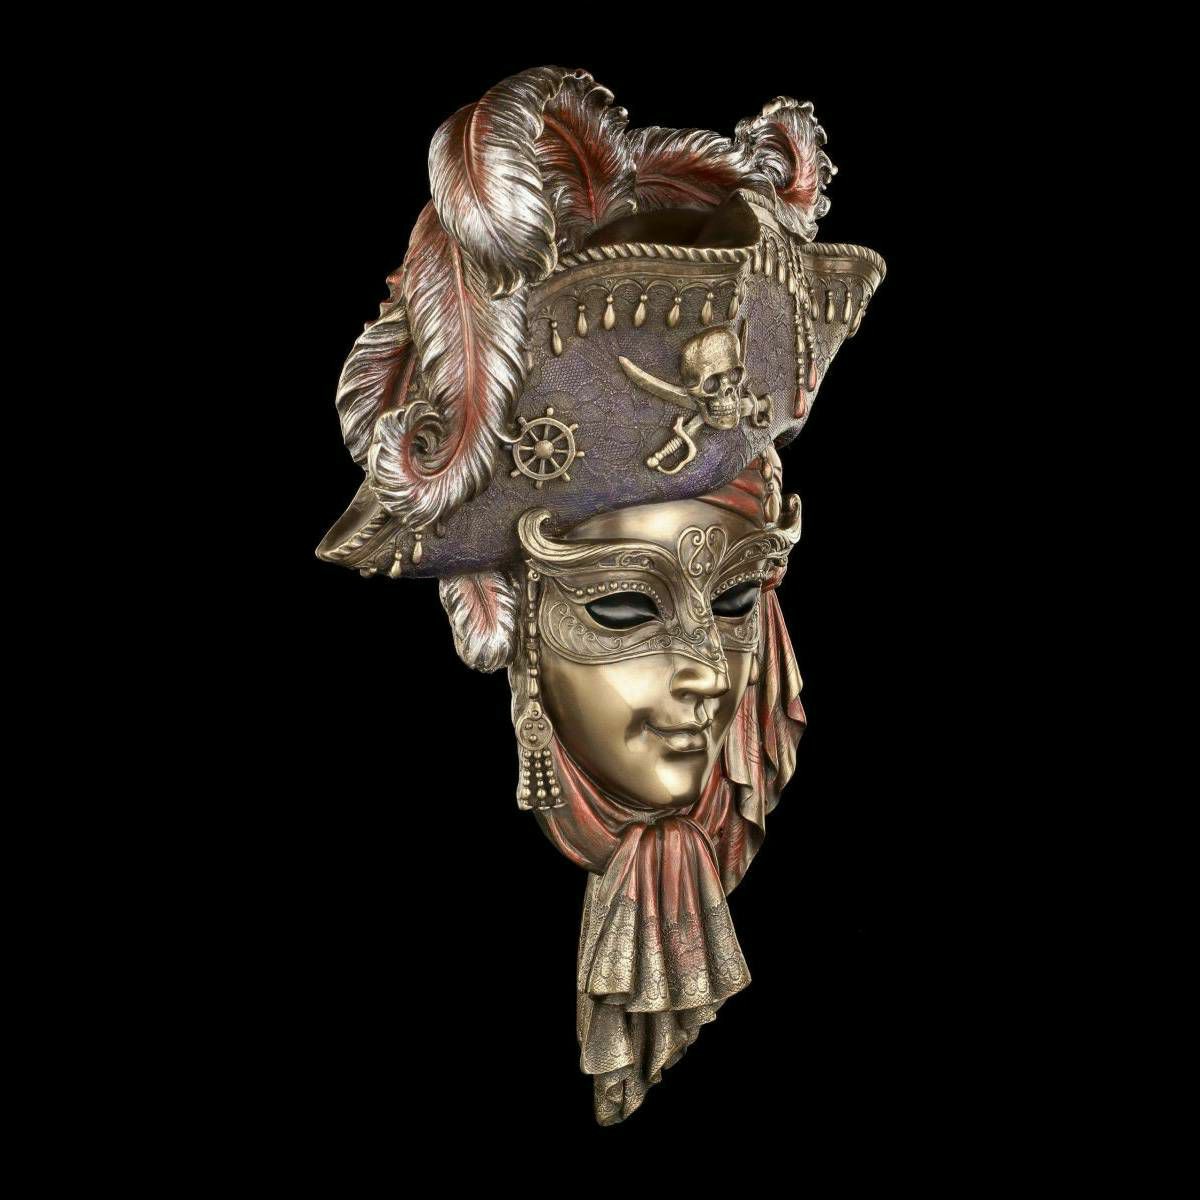 Venecijanska maska Pirate